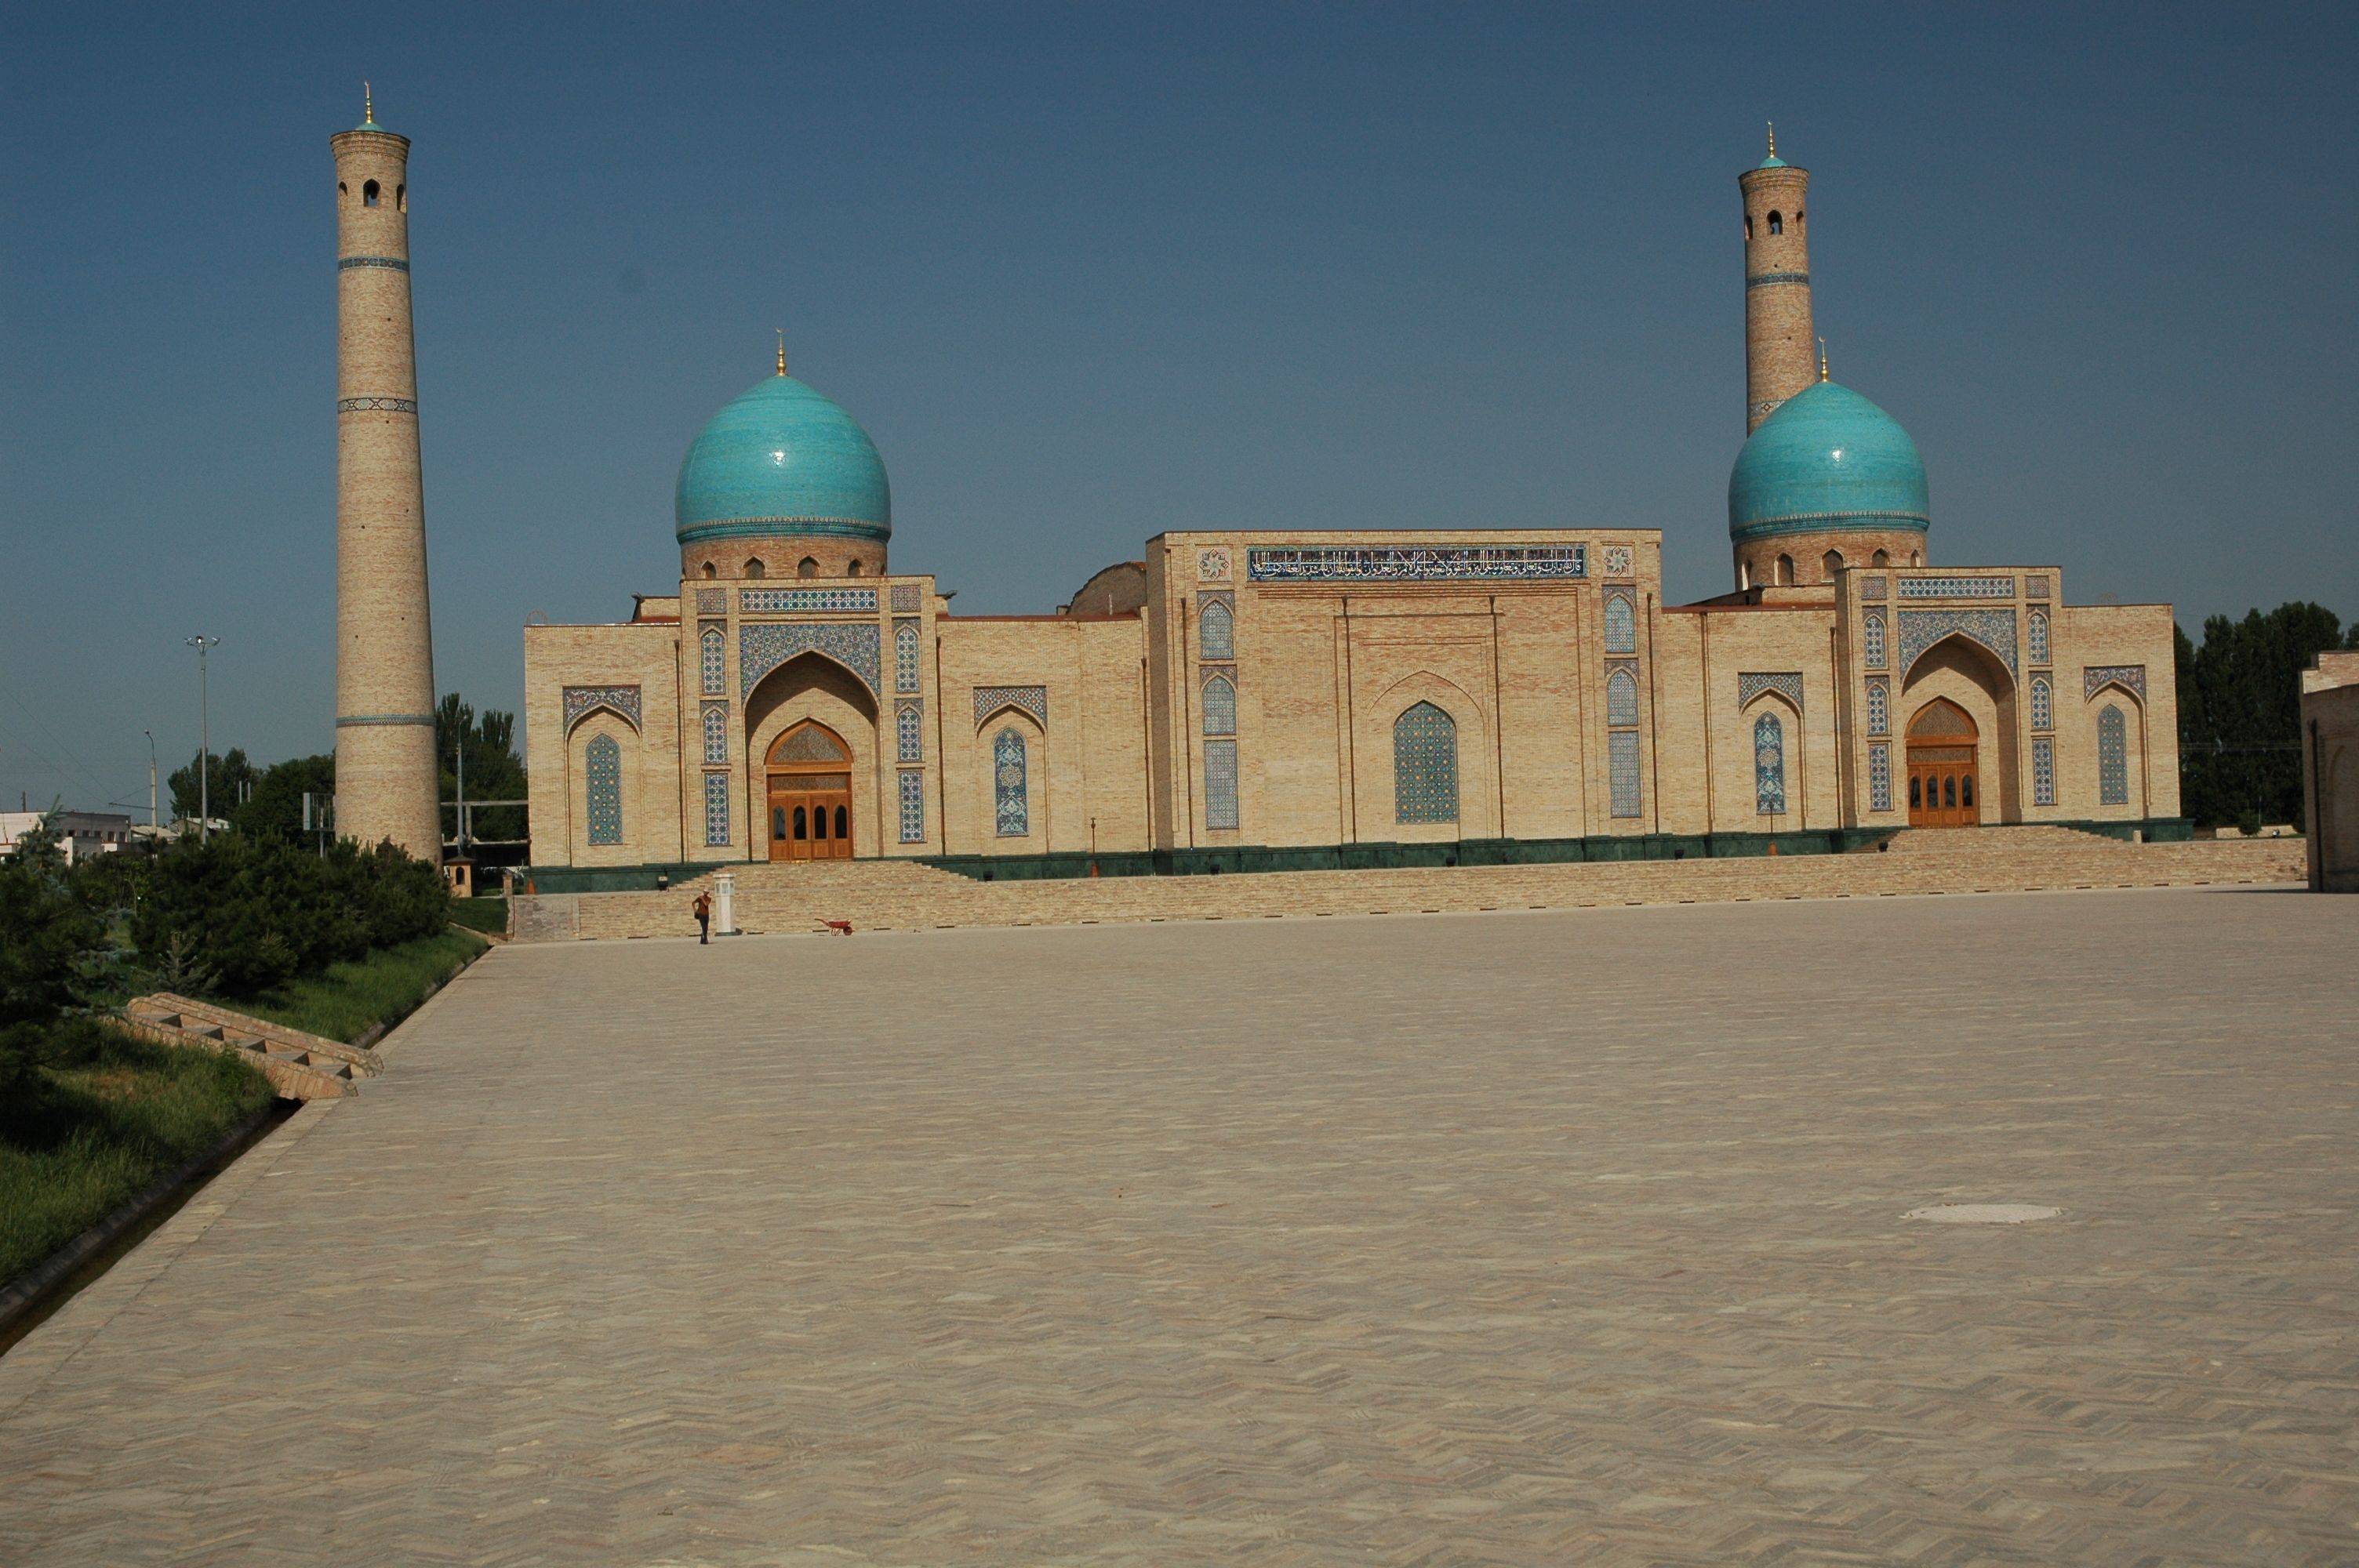 Ankunft in Usbekistan